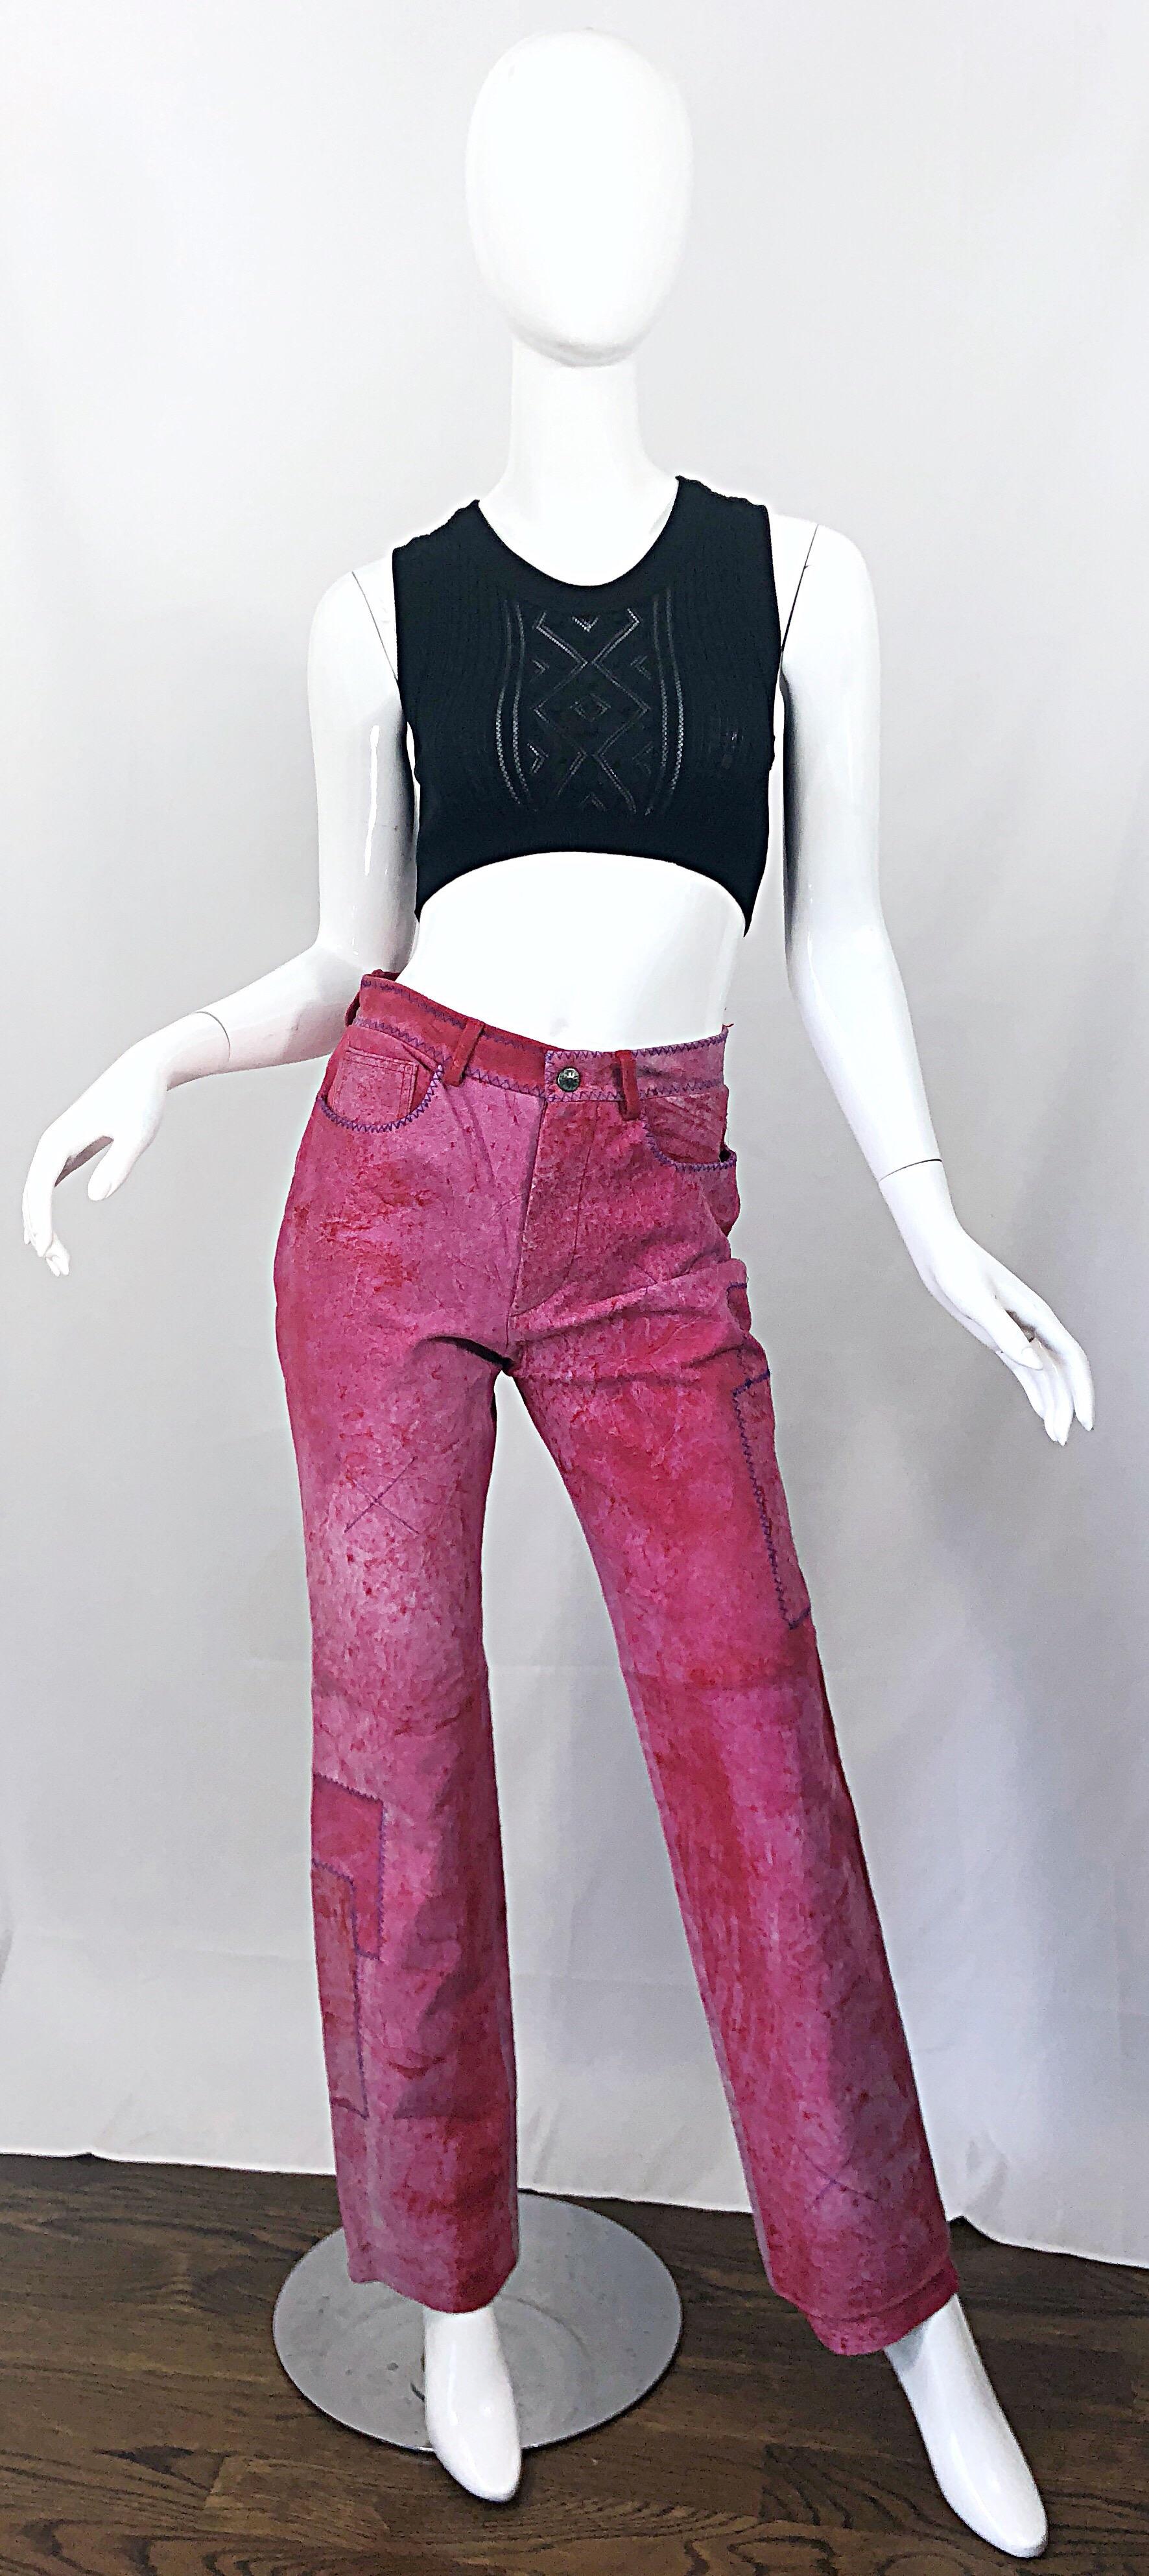 Nouveau avec étiquette début des années 1990 ROME GIGLI rose chaud / fuchsia et violet en cuir suédé en détresse patchwork pantalon taille haute ! Ce pantalon rare a été vendu au détail pour 1 500 dollars vers 1990, ce qui équivaut à près de 3 000